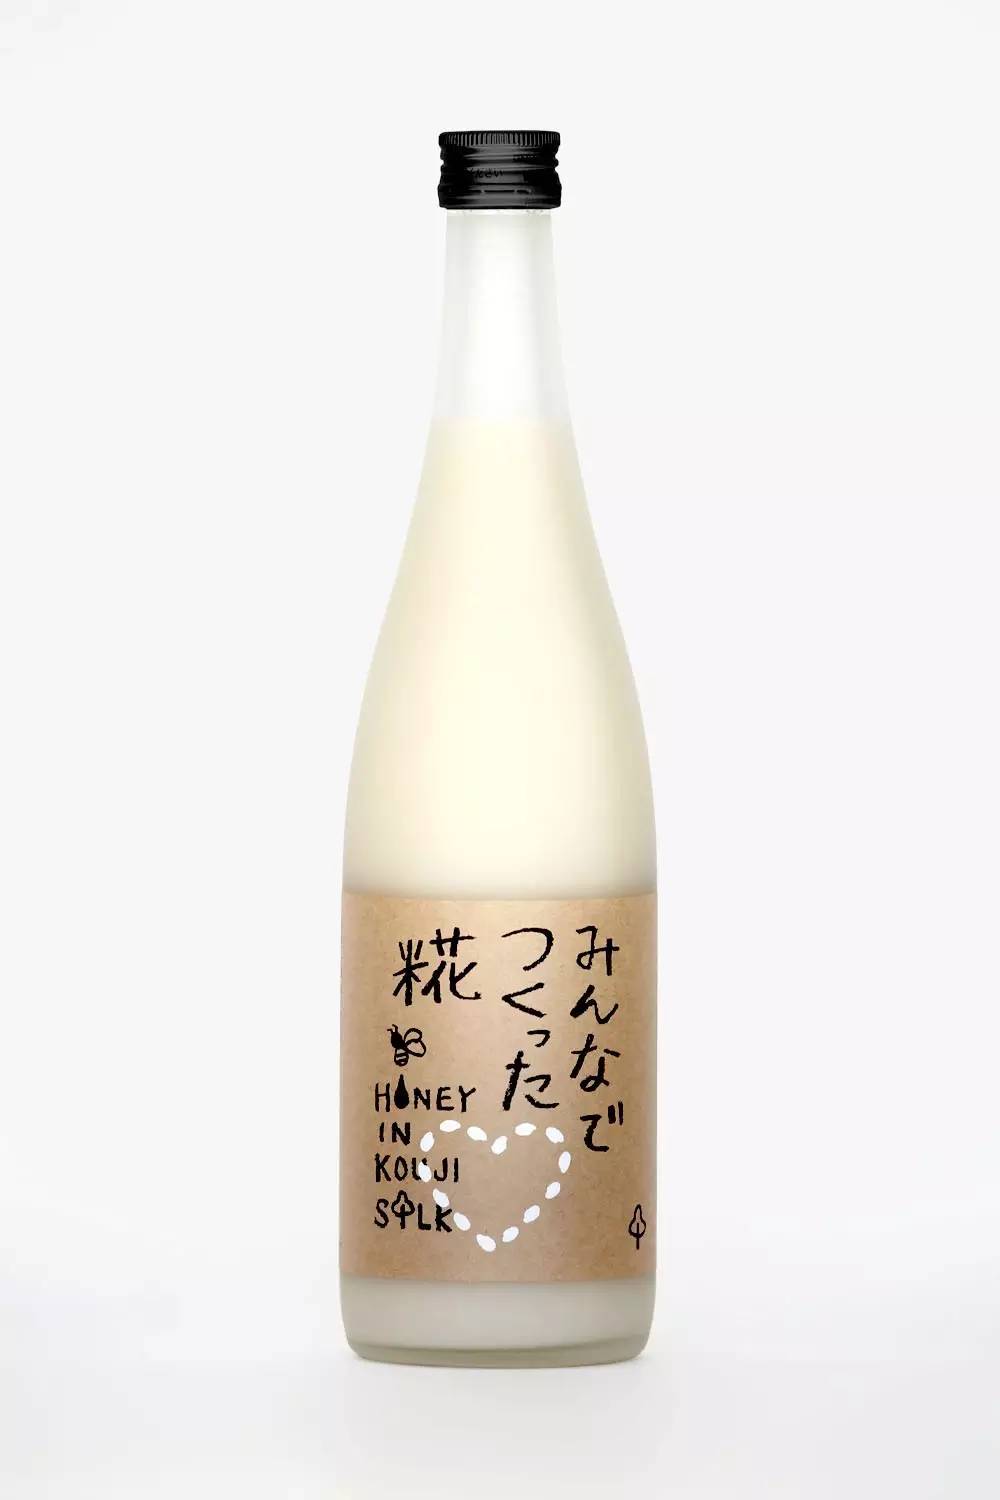 精选9例 日本の酒包装设计